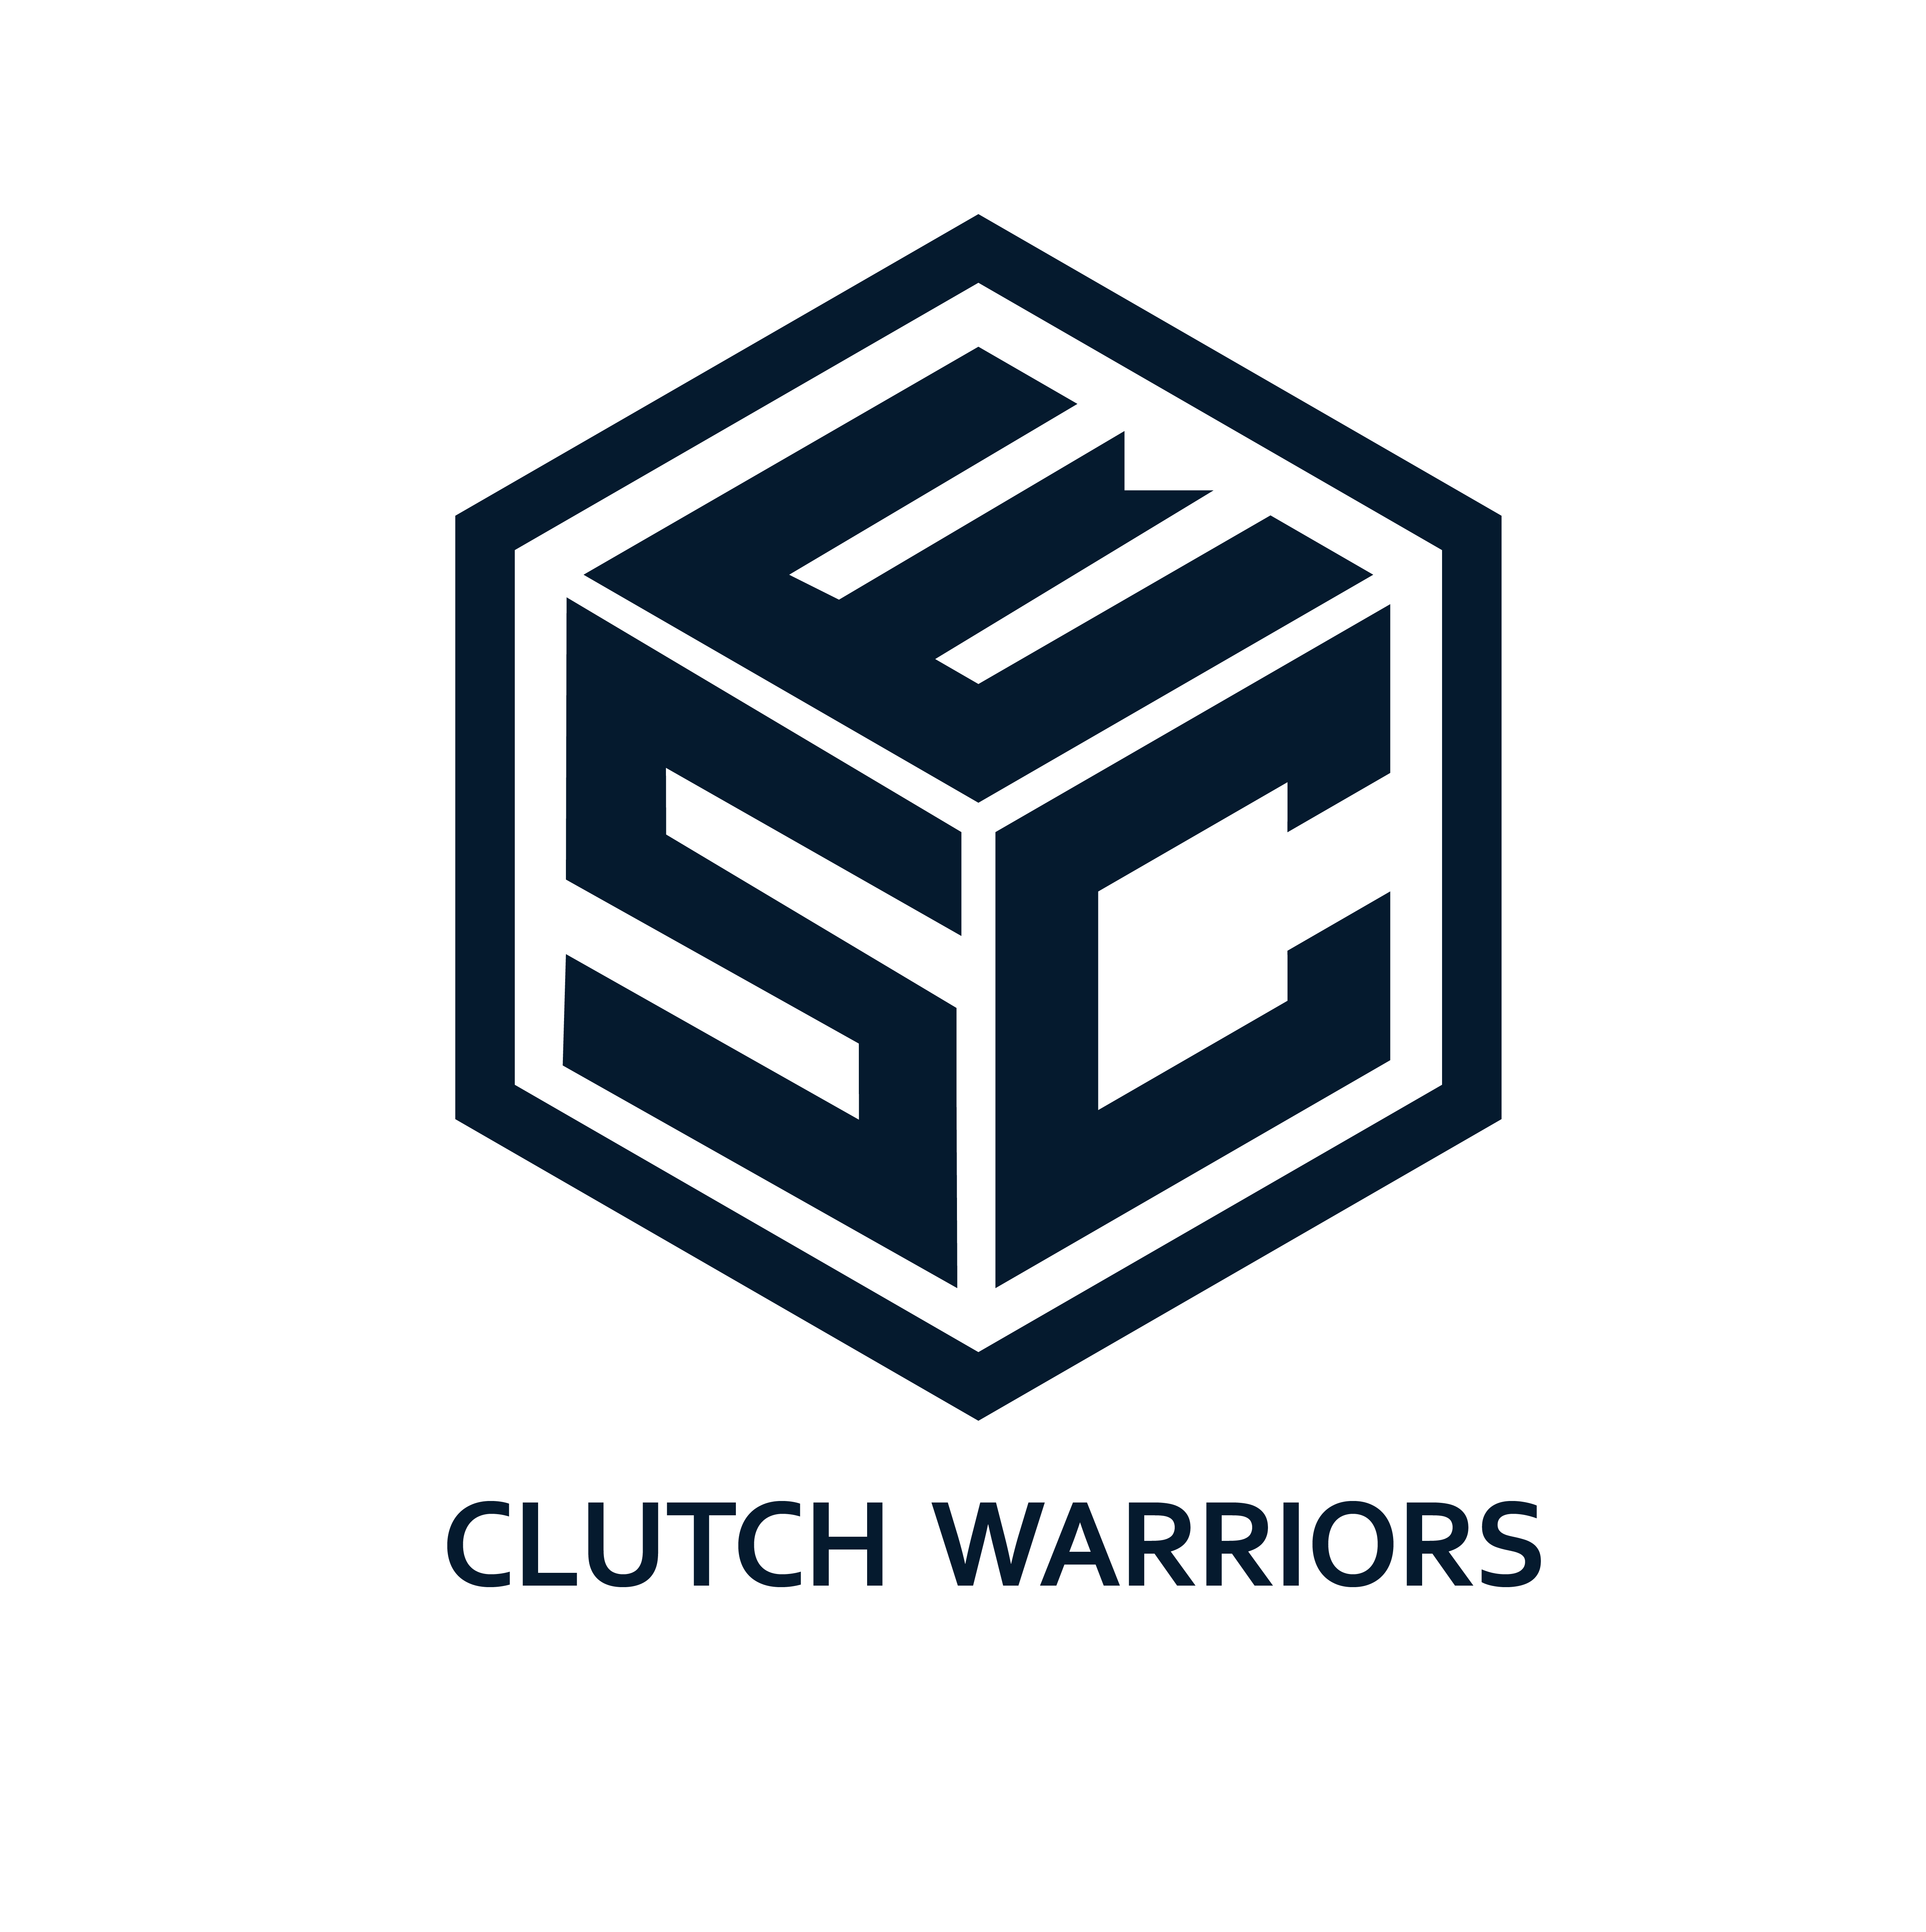 Clutch warriors